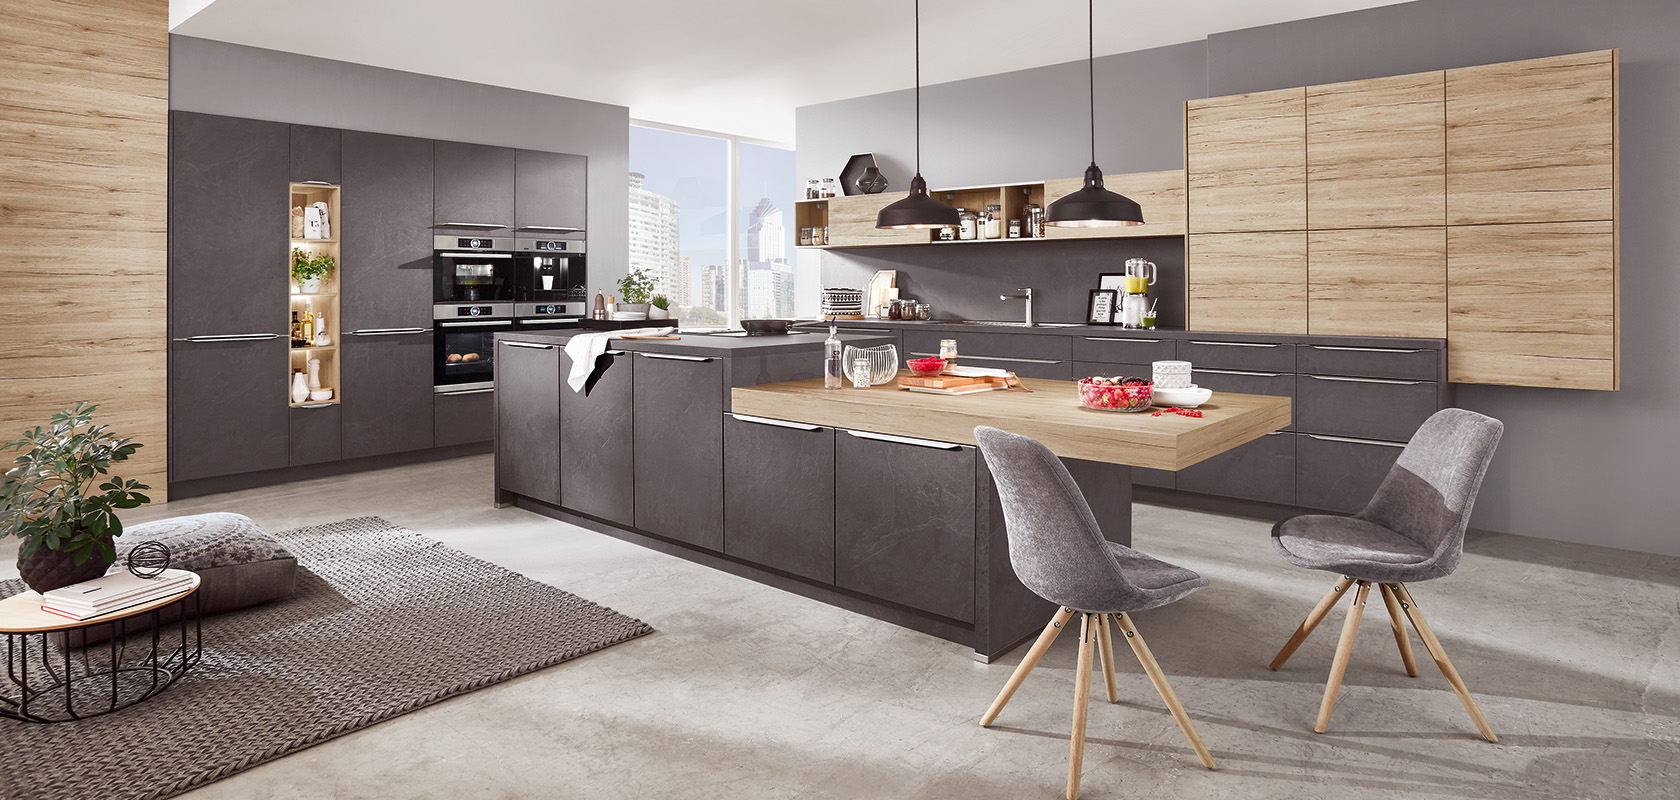 Diseño interior de cocina moderna con elegantes gabinetes grises y de madera, electrodomésticos integrados y un área de comedor elegante con asientos cómodos y vistas a la ciudad.